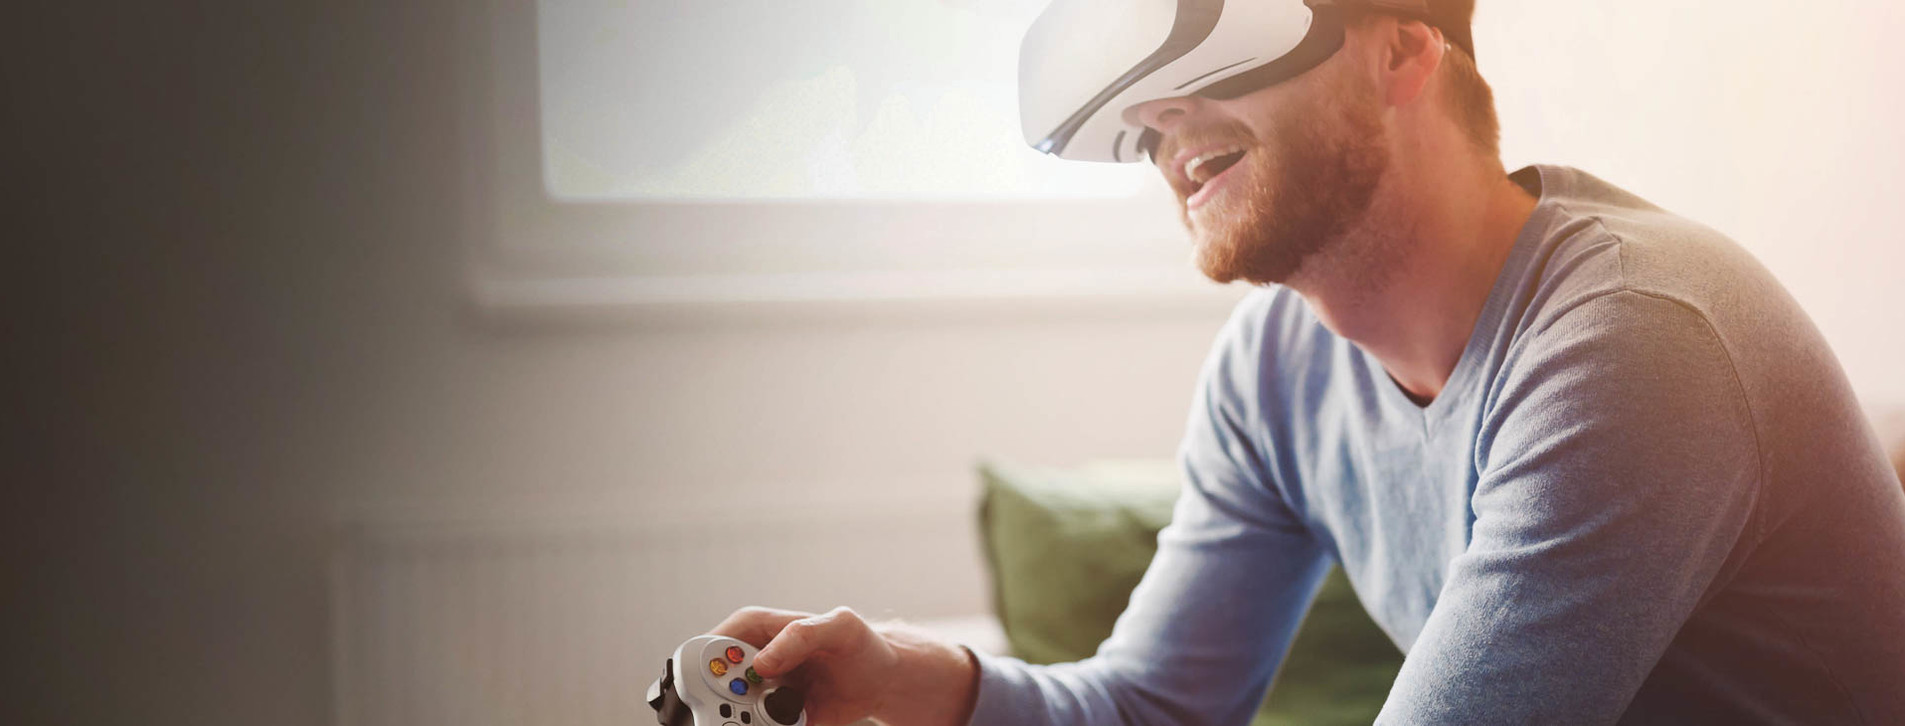 Фото 1 - Playstation в VR-очках